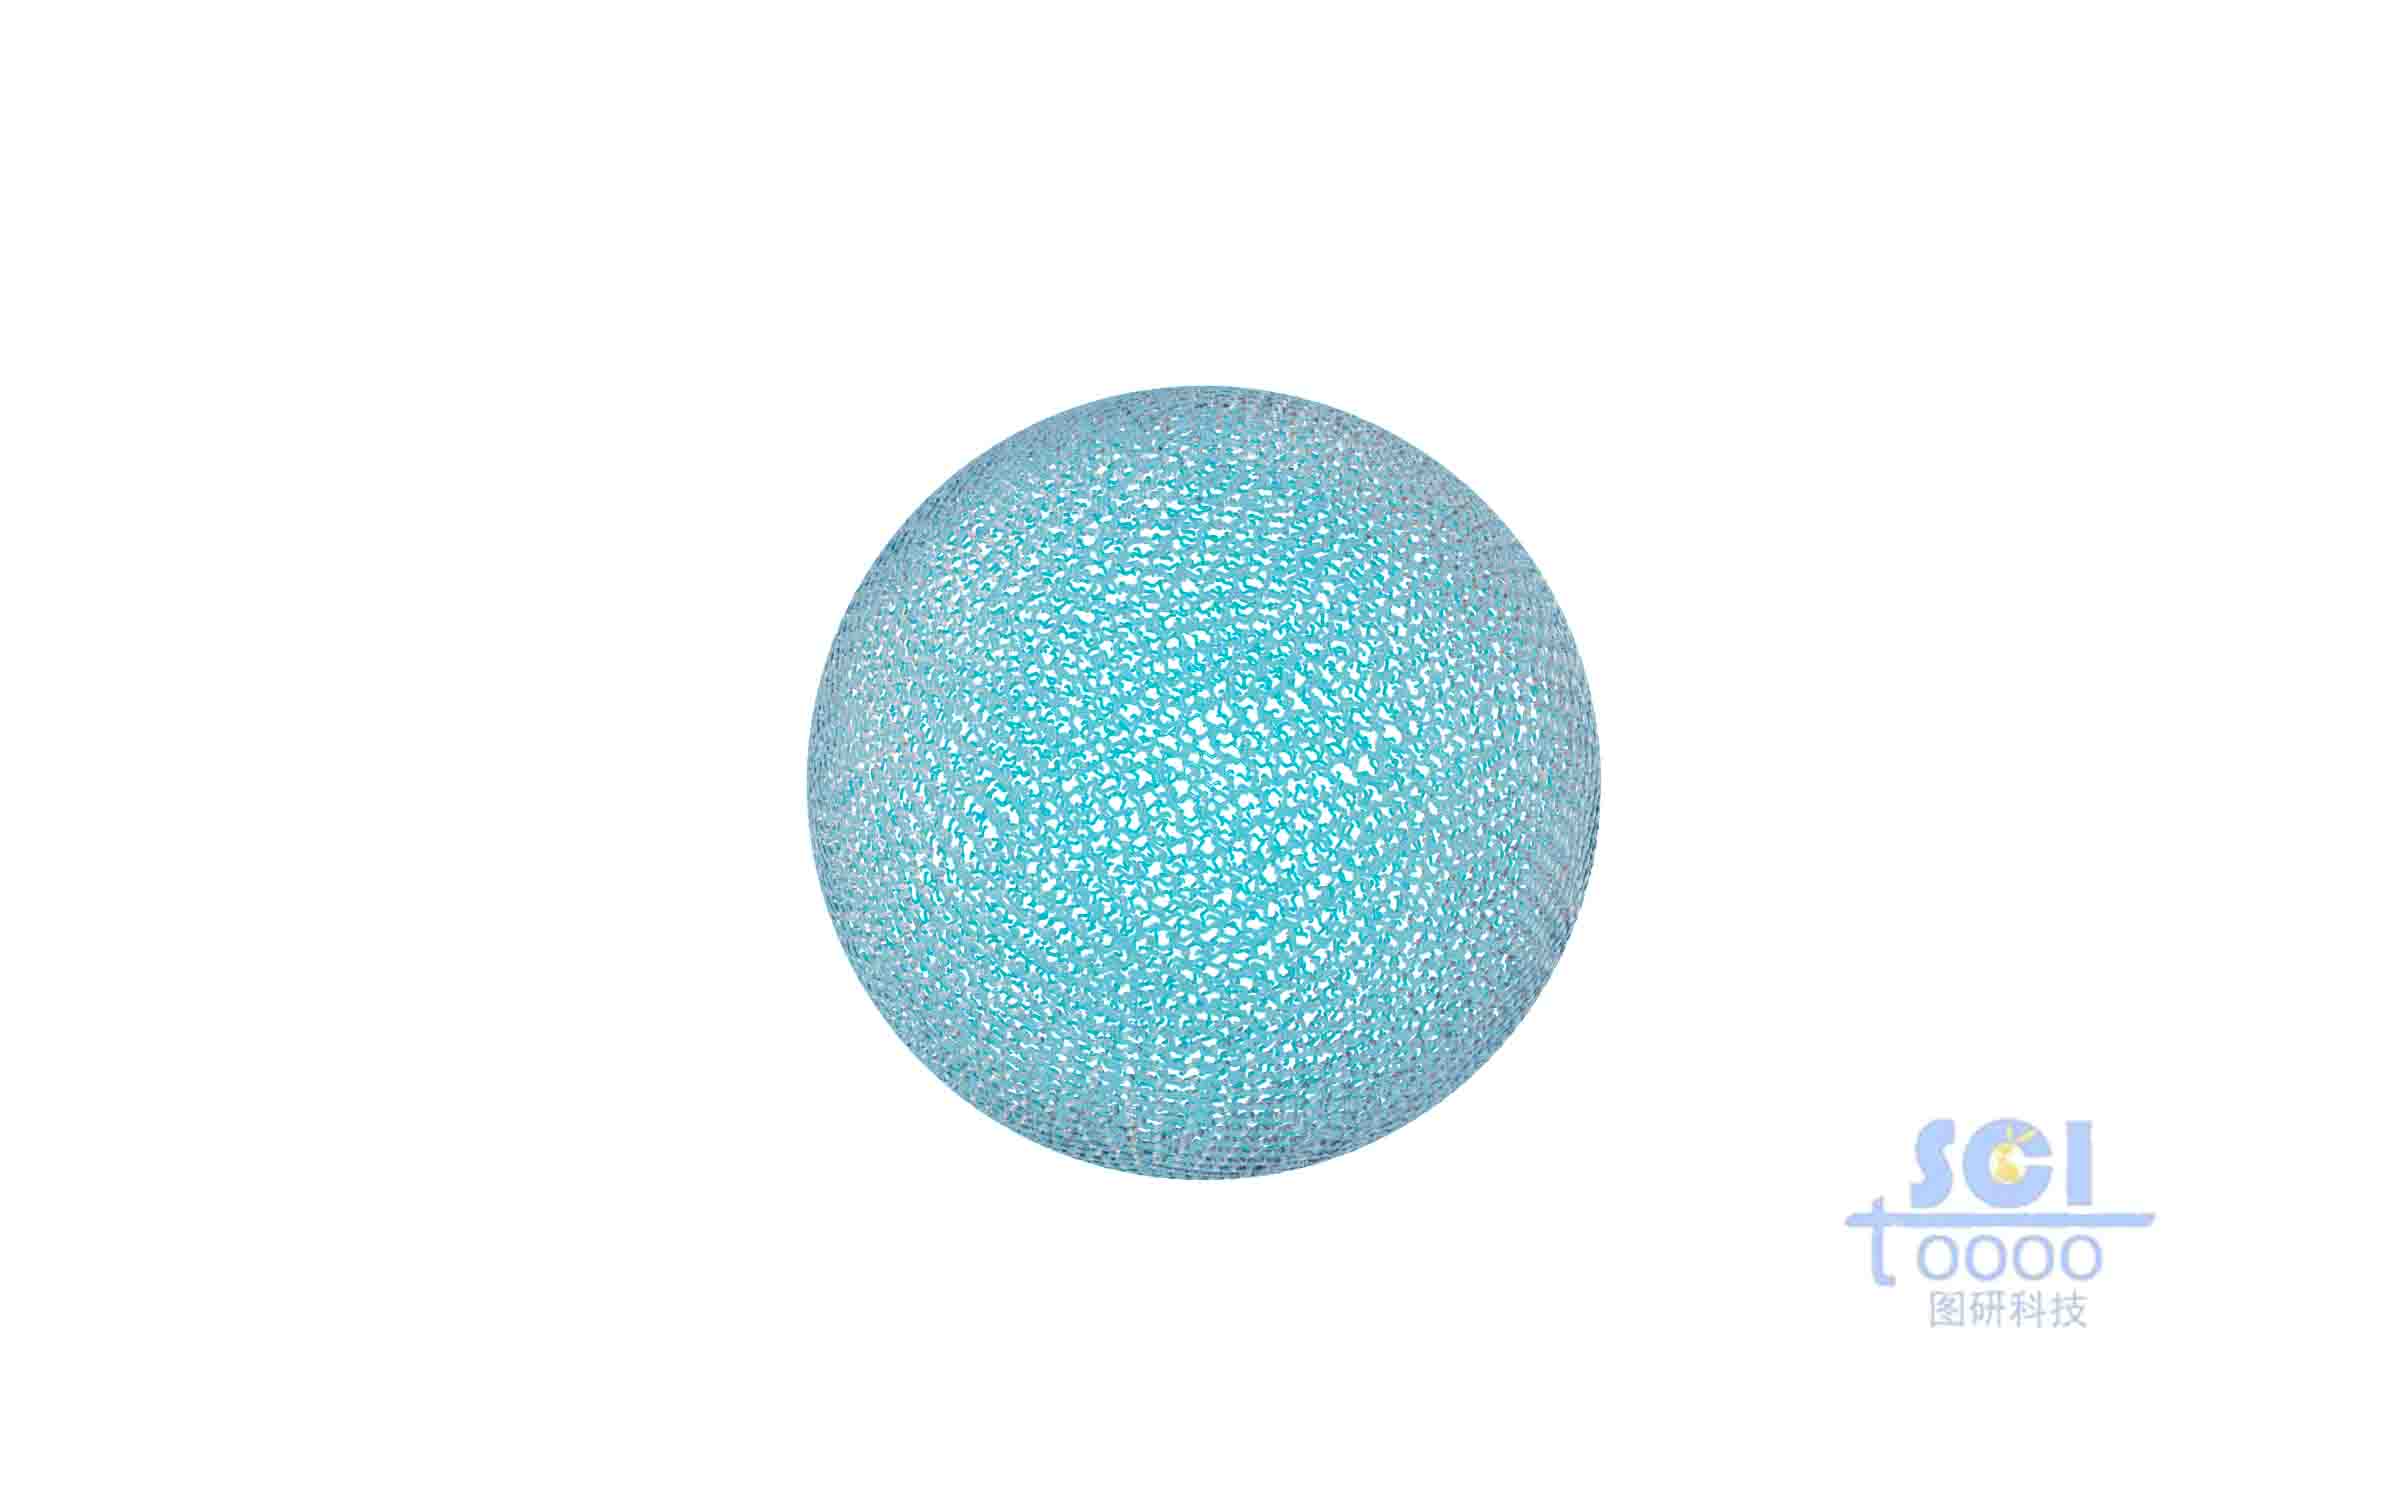 高分子链交织形成的网状空心球